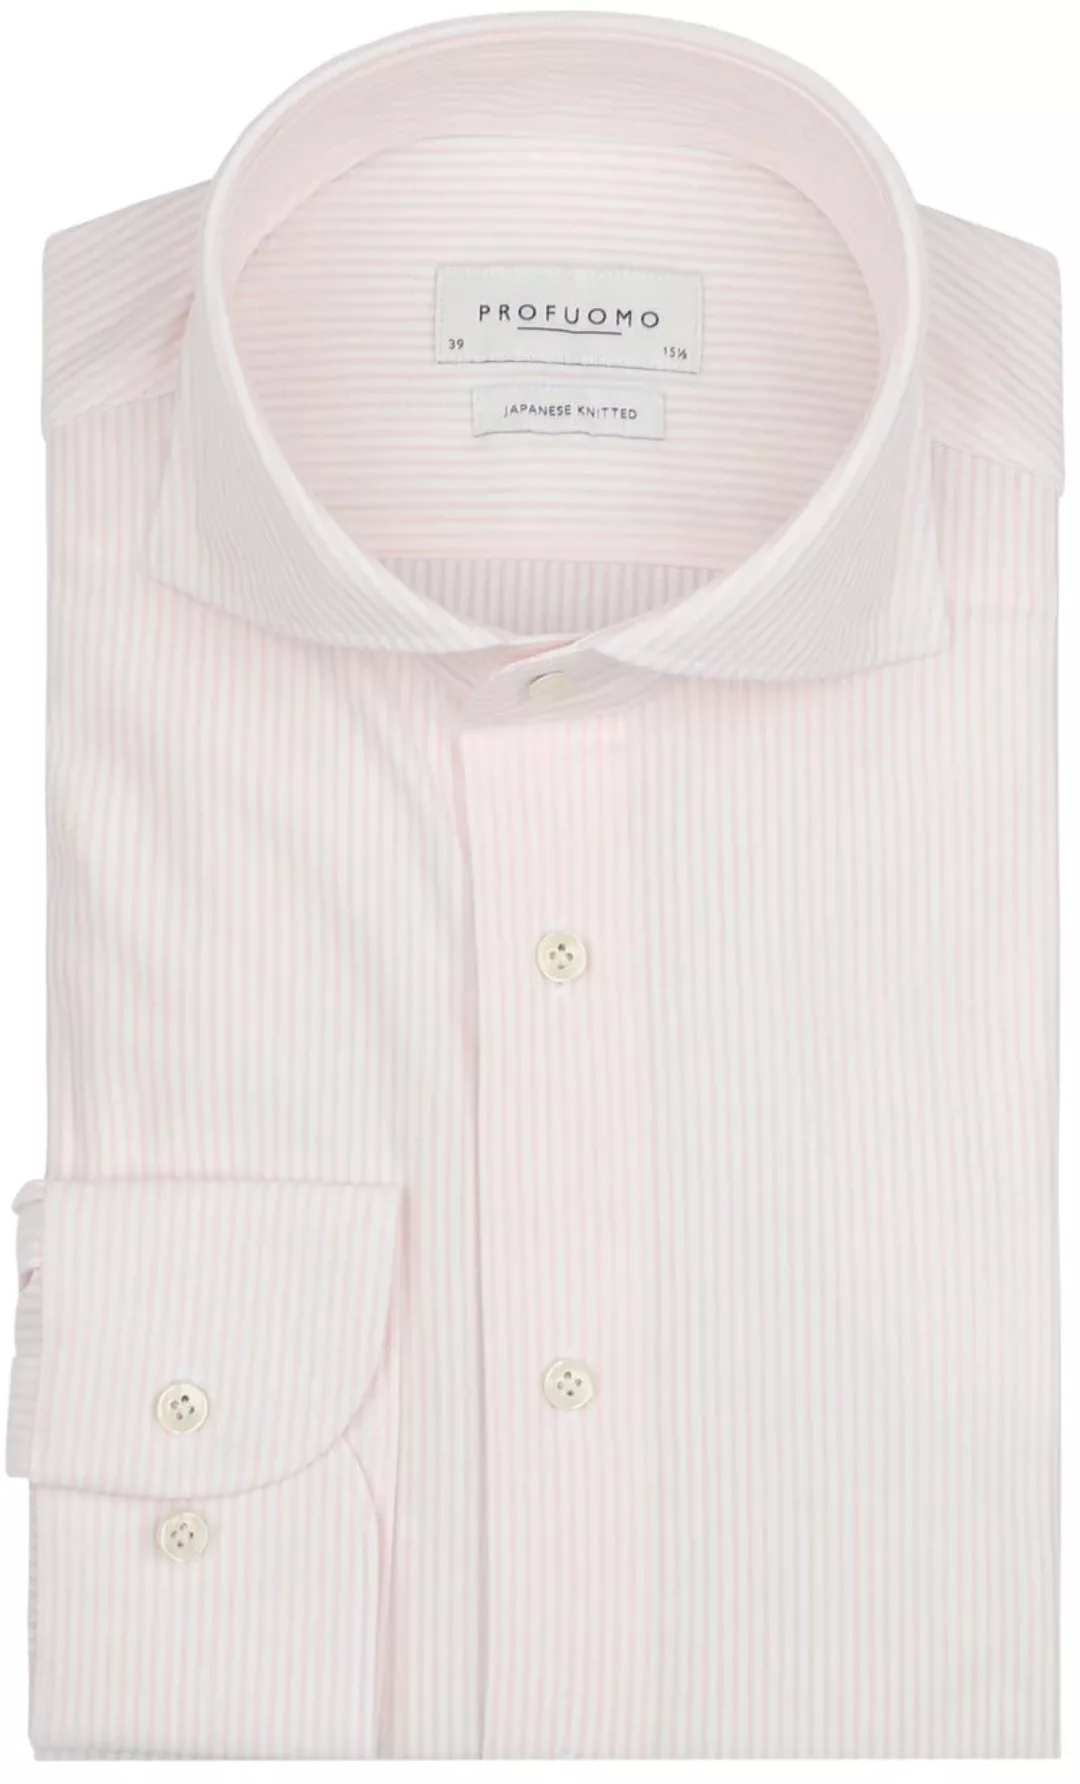 Profuomo Hemd Japanese Knitted Rosa Streifen - Größe 39 günstig online kaufen